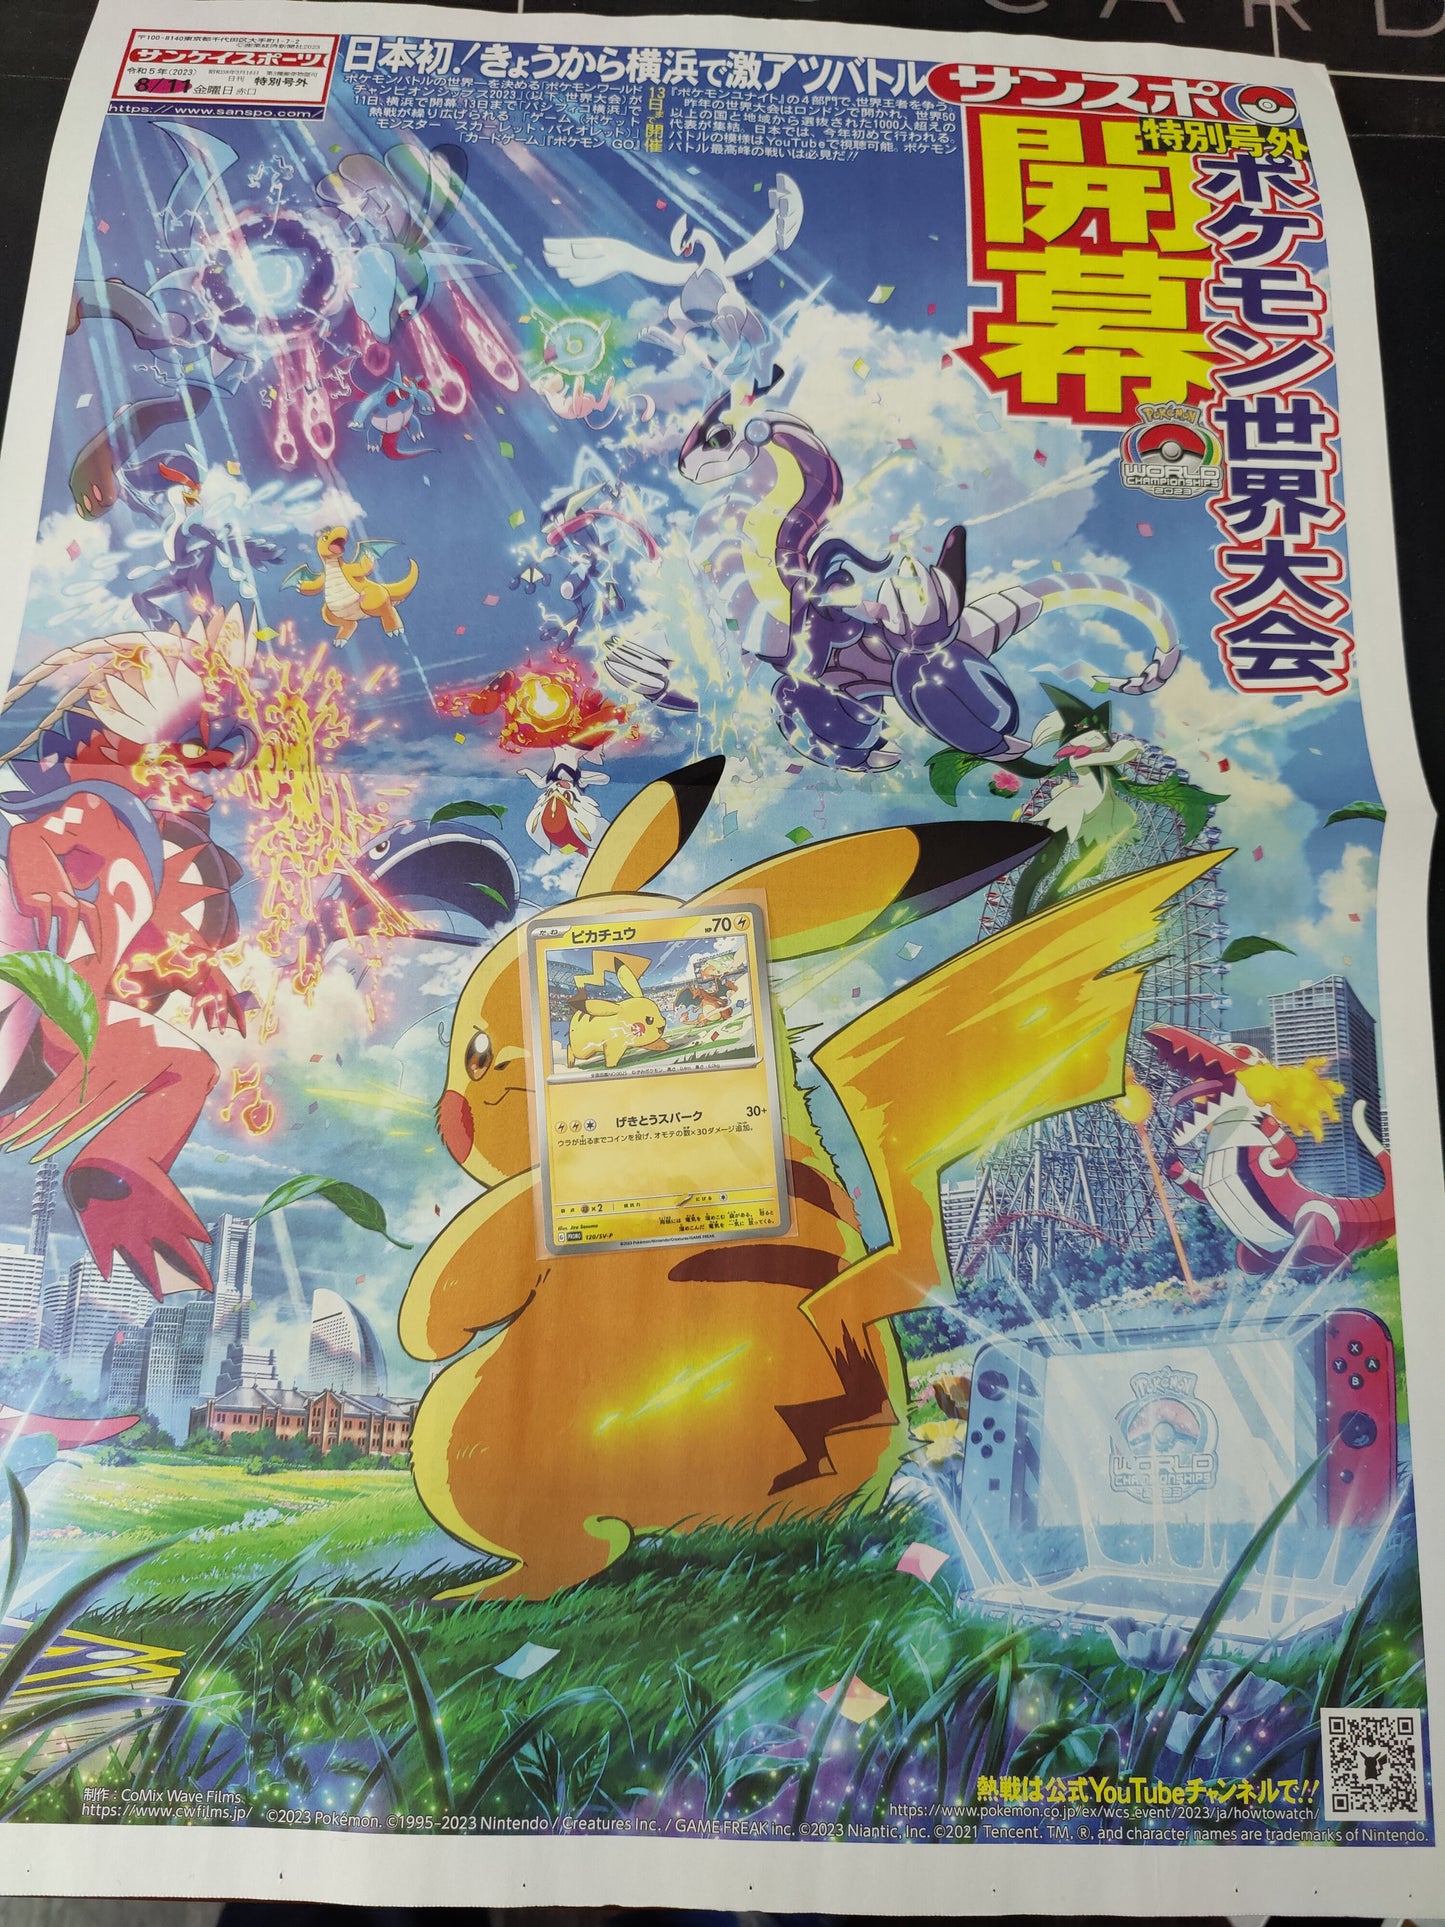 1 Pikachu Promo card + 1 Newspaper